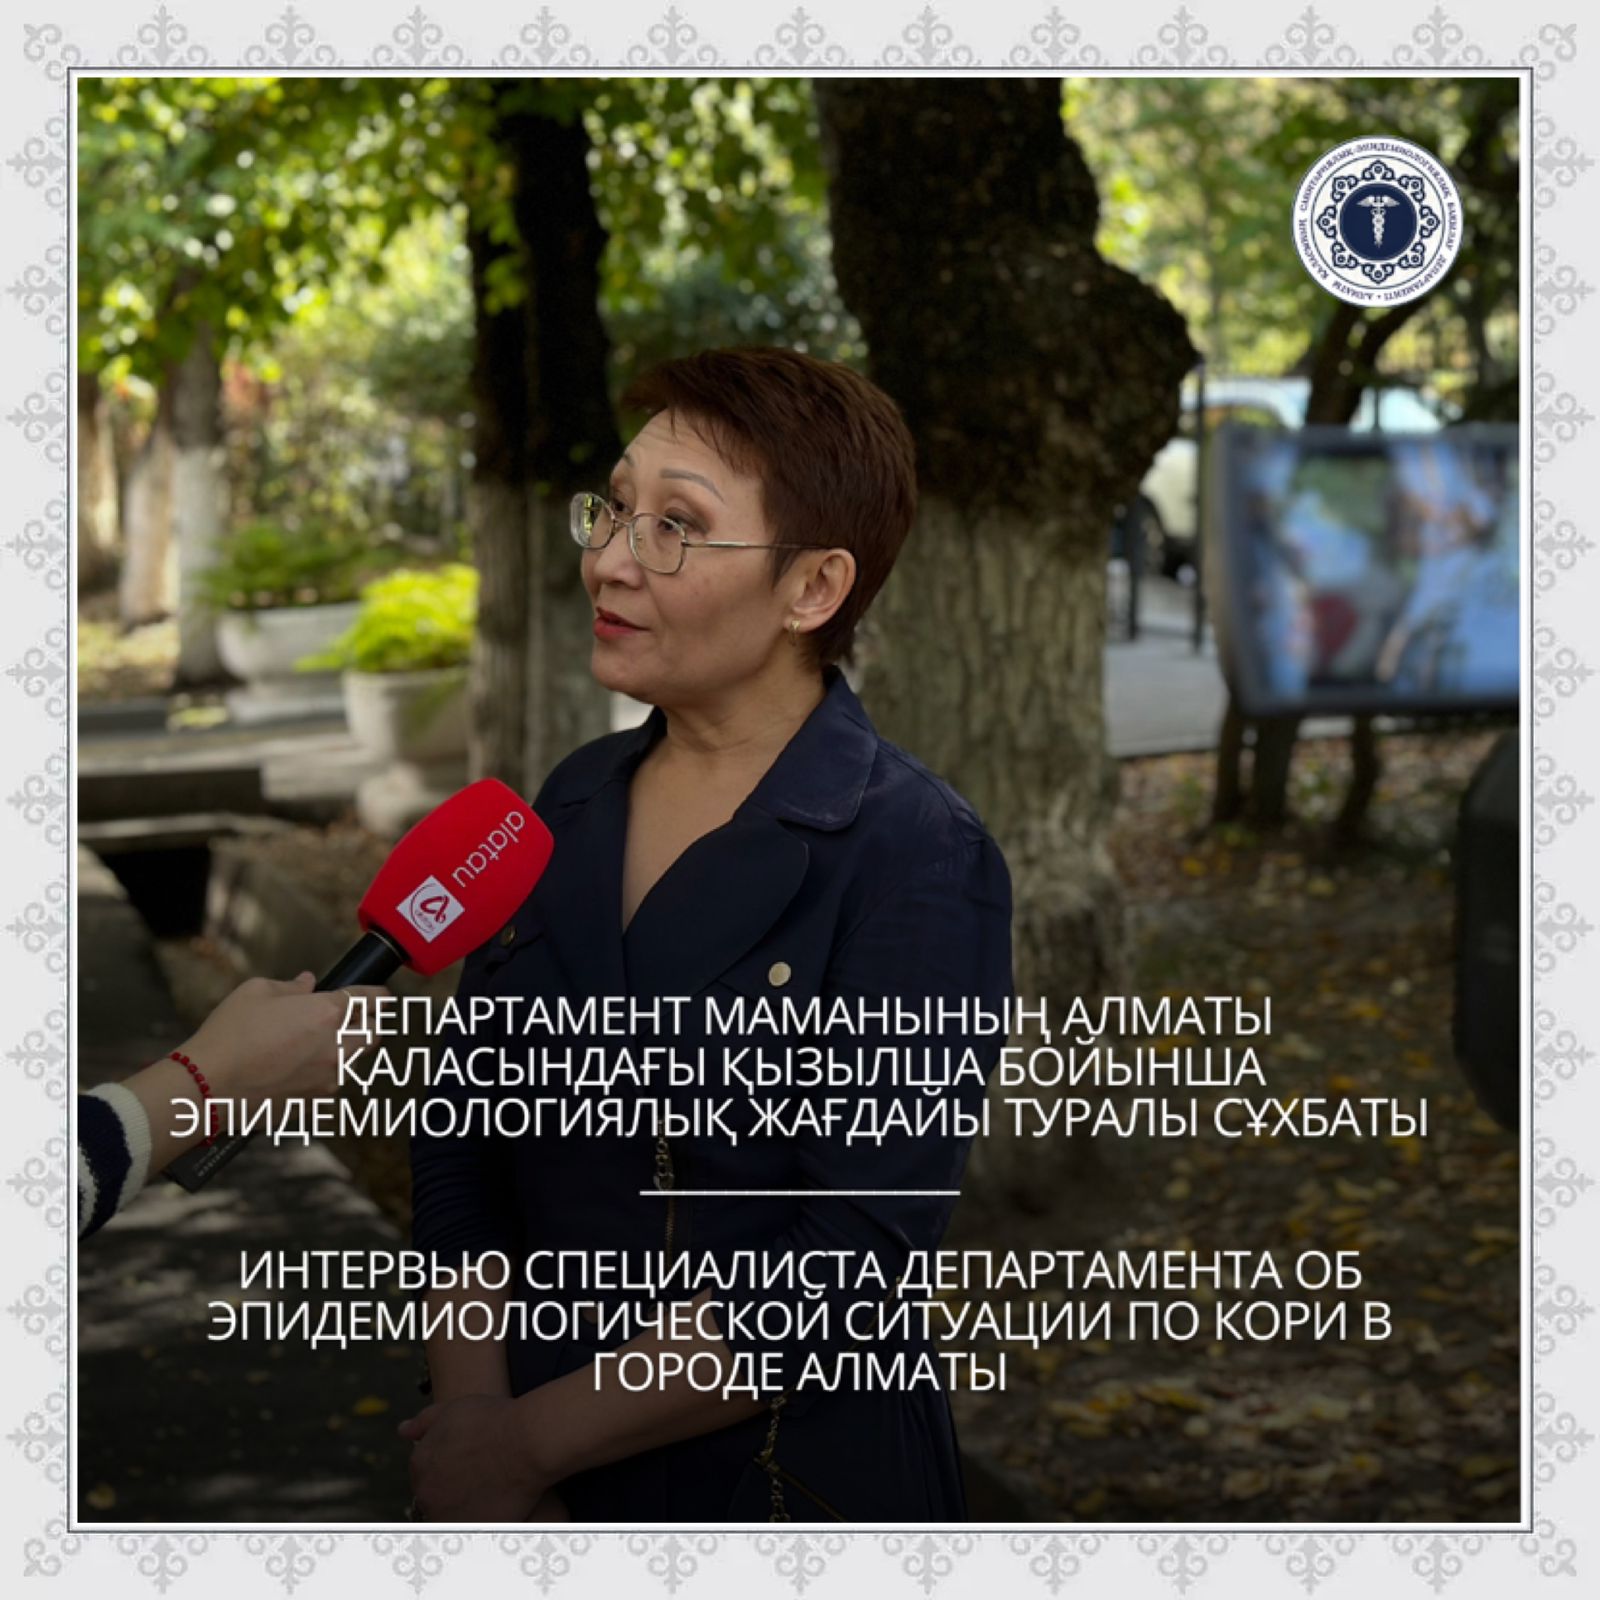 Интервью специалиста Департамента об эпидемиологической ситуации по кори в городе Алматы